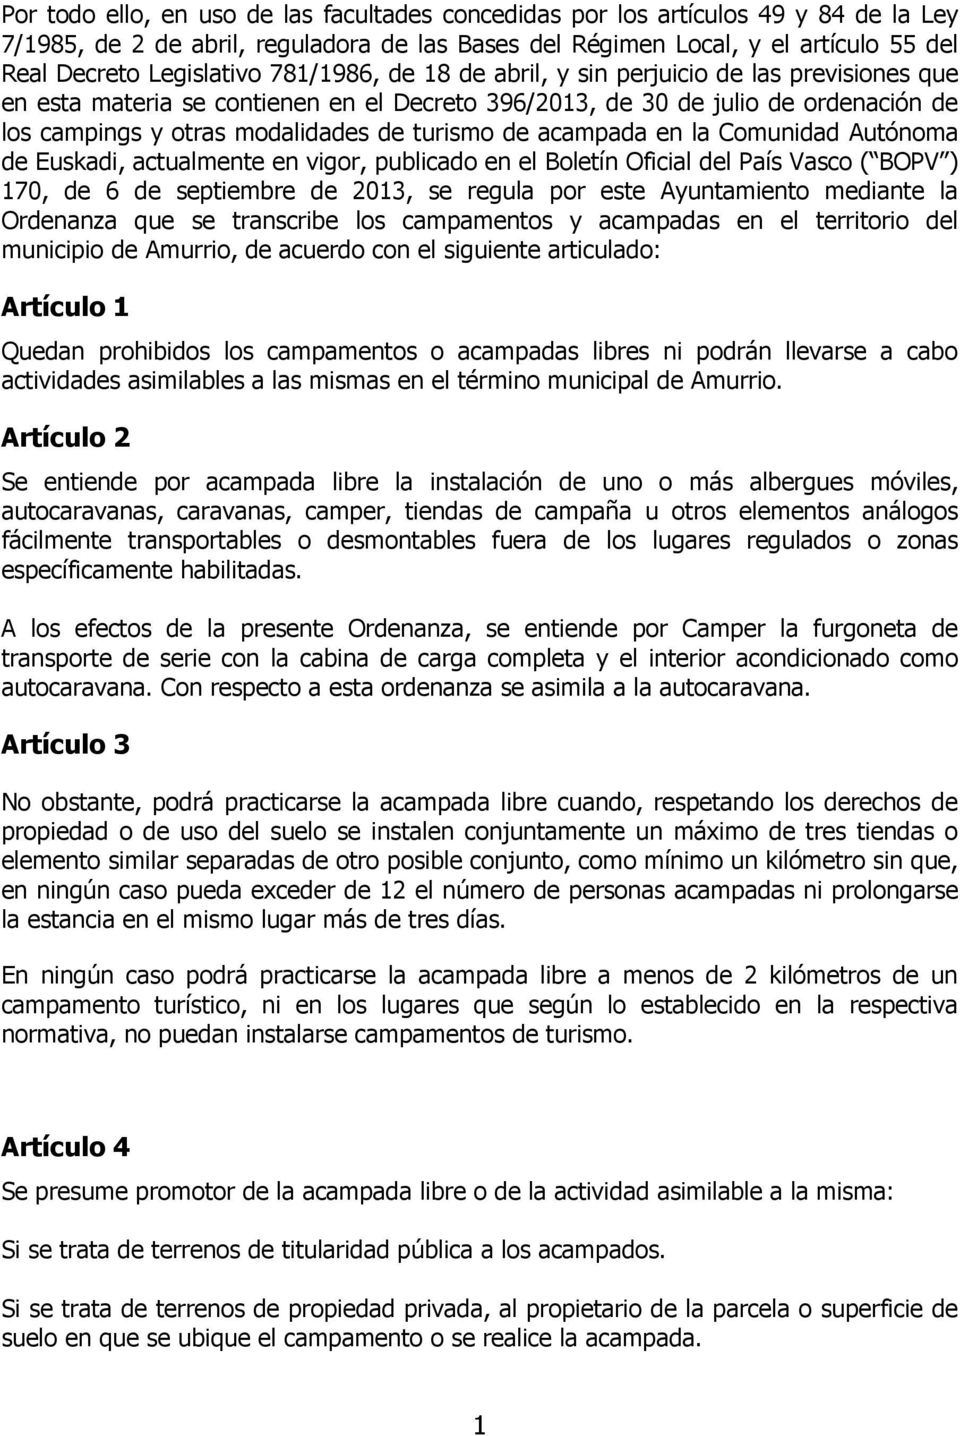 acampada en la Comunidad Autónoma de Euskadi, actualmente en vigor, publicado en el Boletín Oficial del País Vasco ( BOPV ) 170, de 6 de septiembre de 2013, se regula por este Ayuntamiento mediante